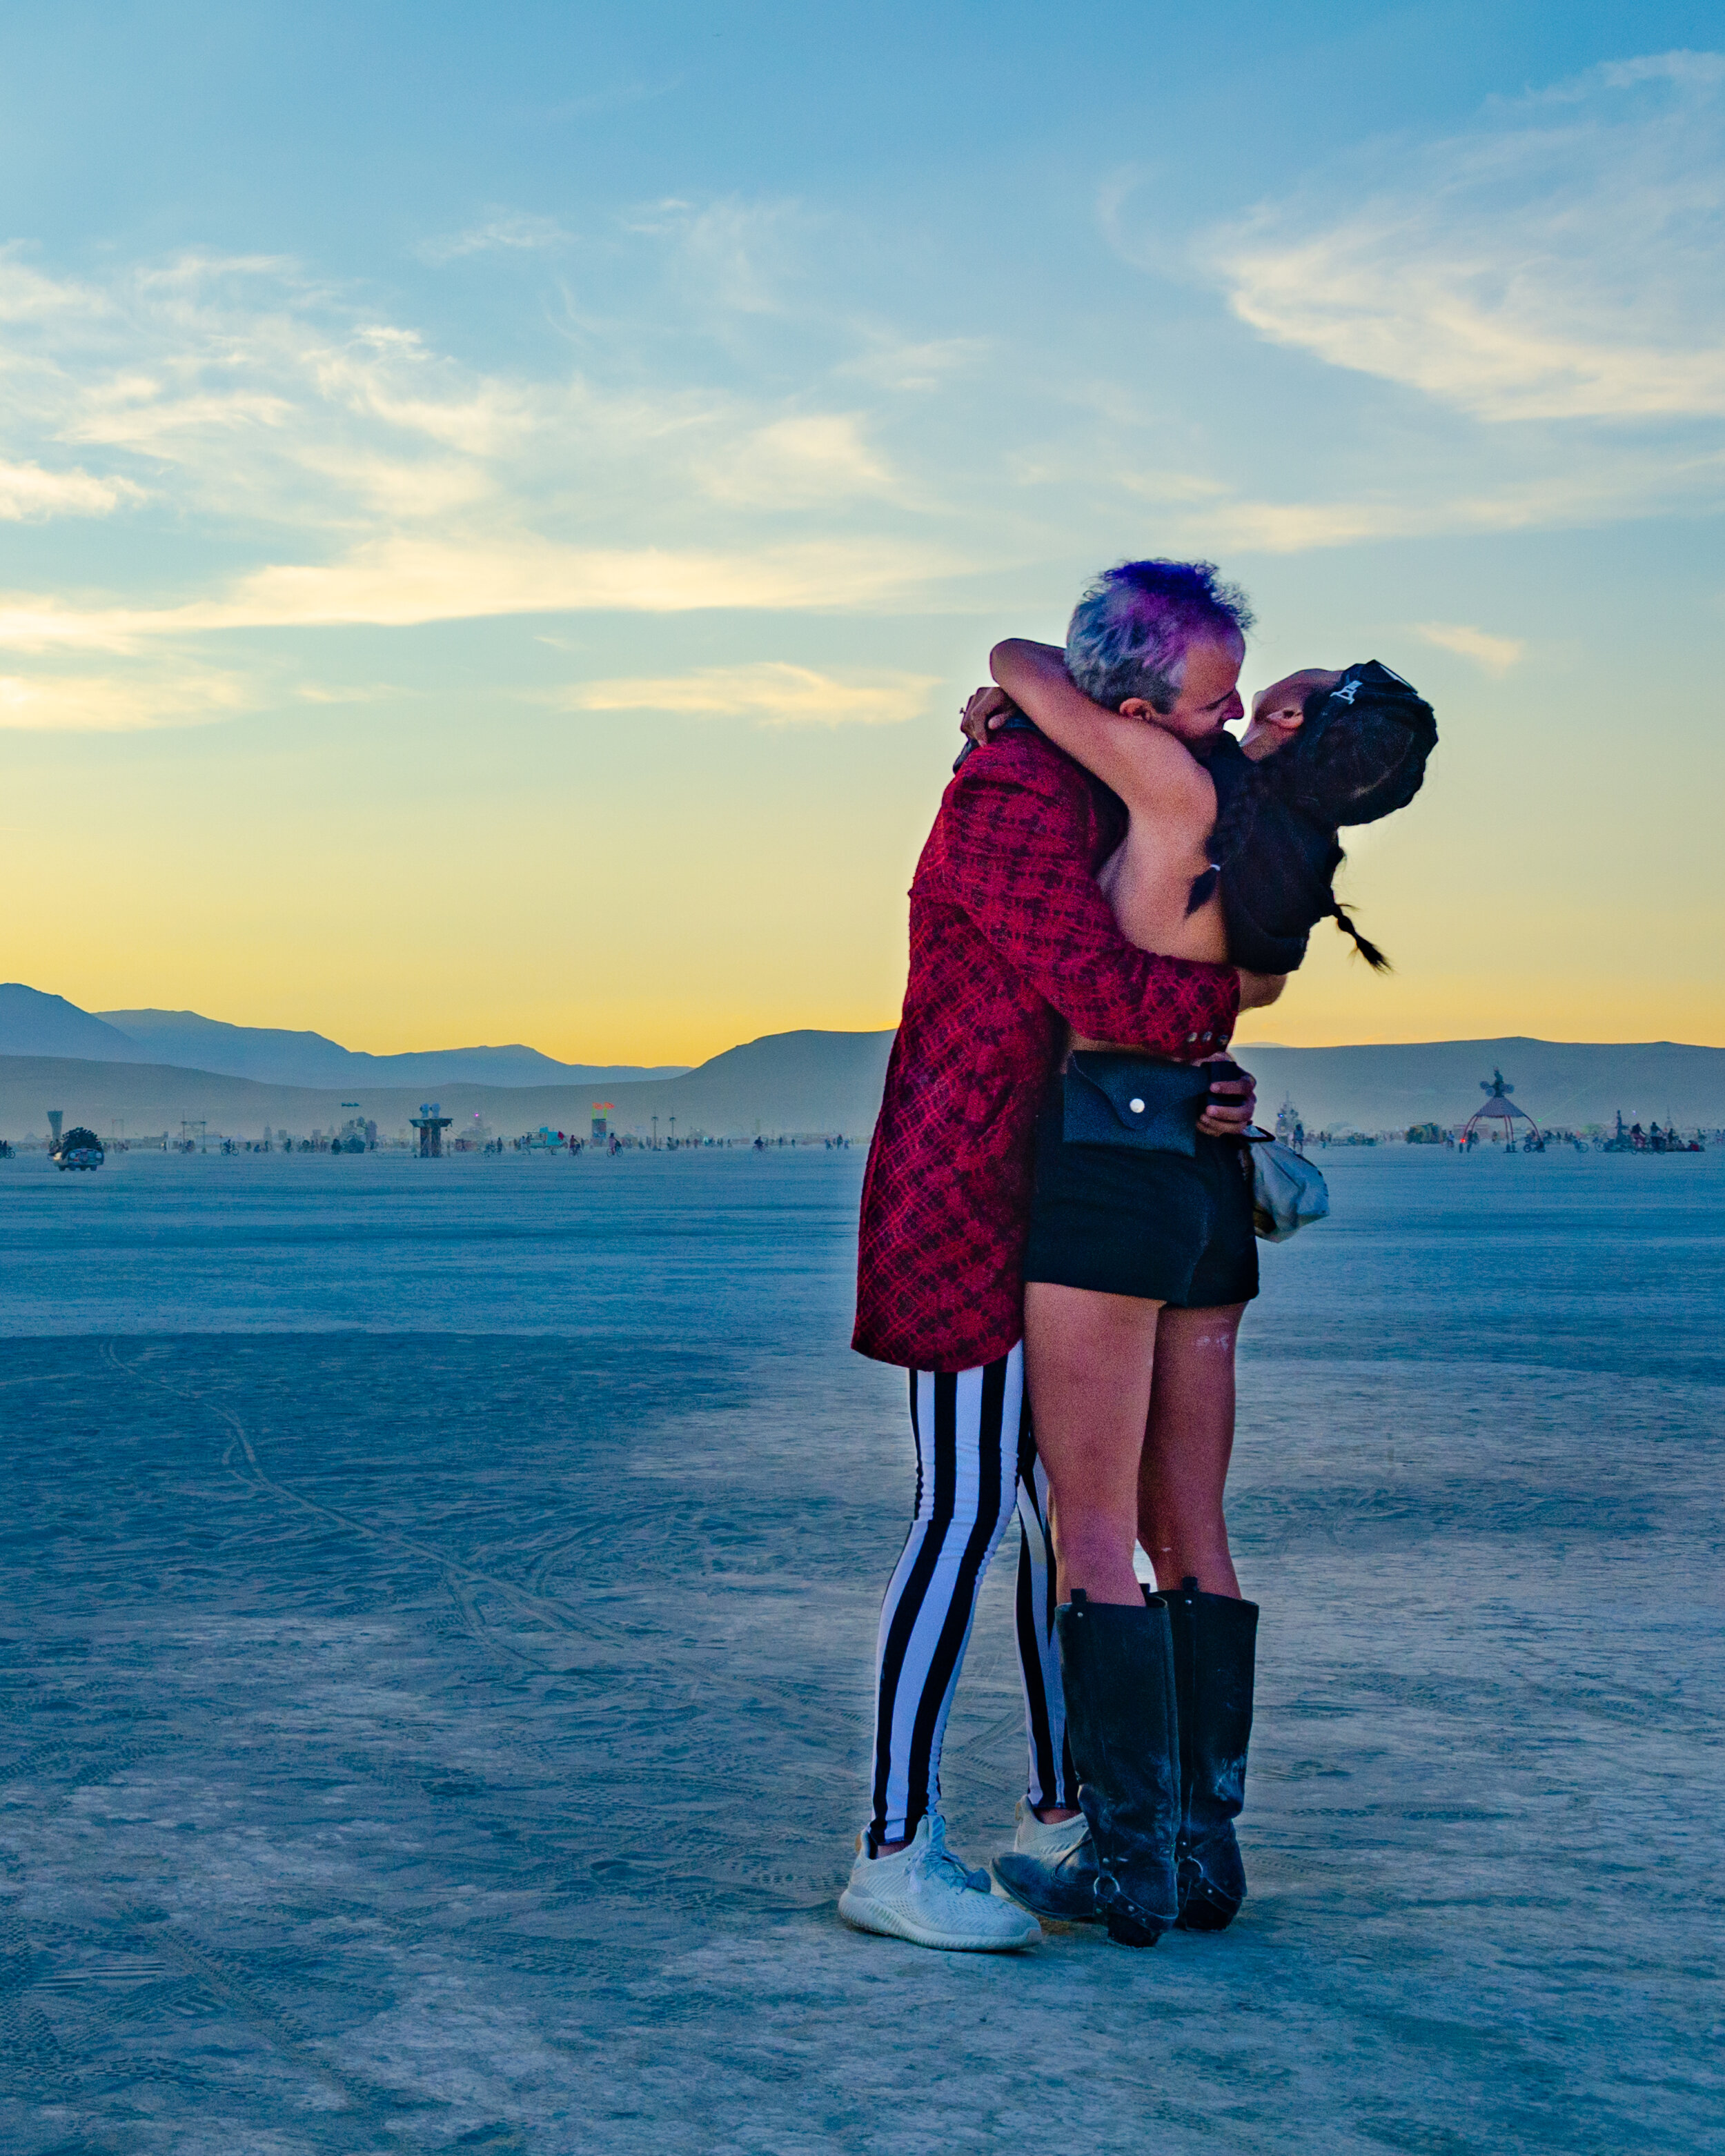 Burning Man 2018 - She said yes!